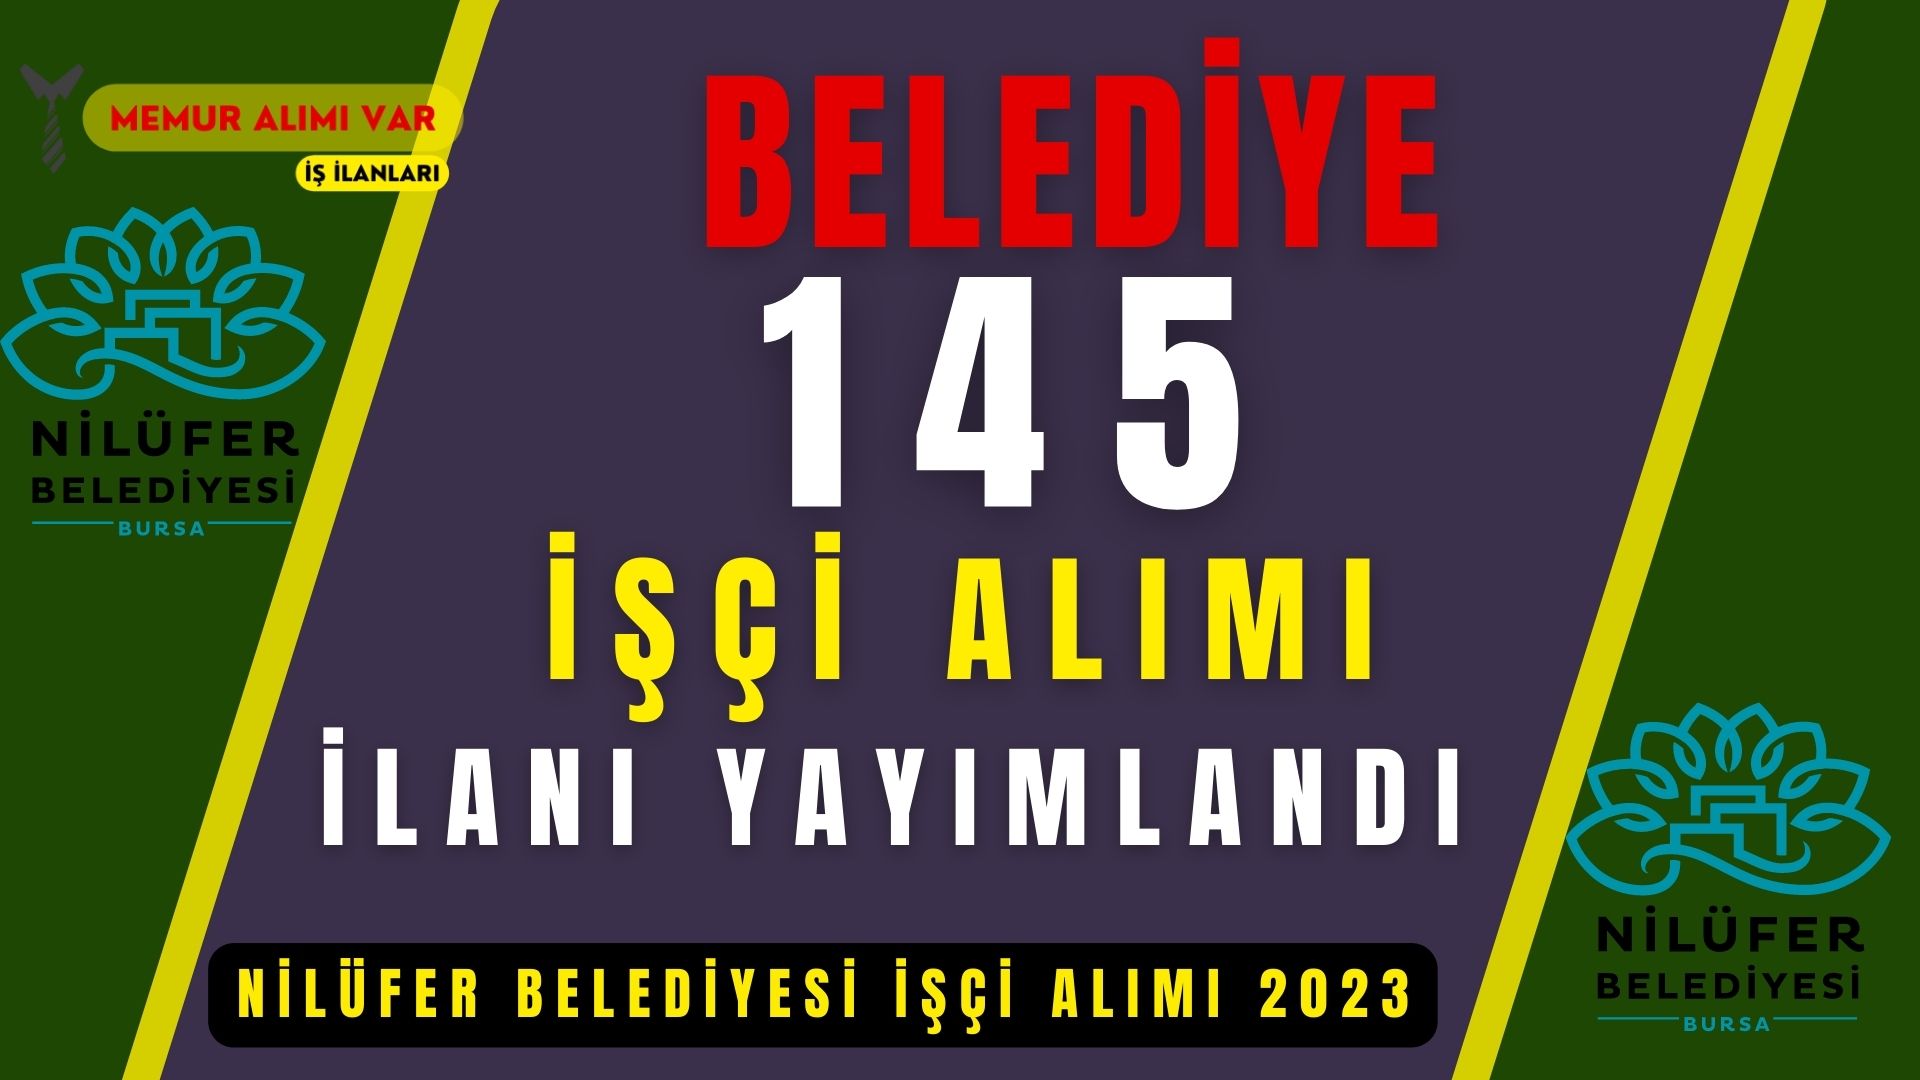 Bursa Nilüfer Belediyesi 145 İşçi Alımı 2023 Başvuru Formu ve Şartları